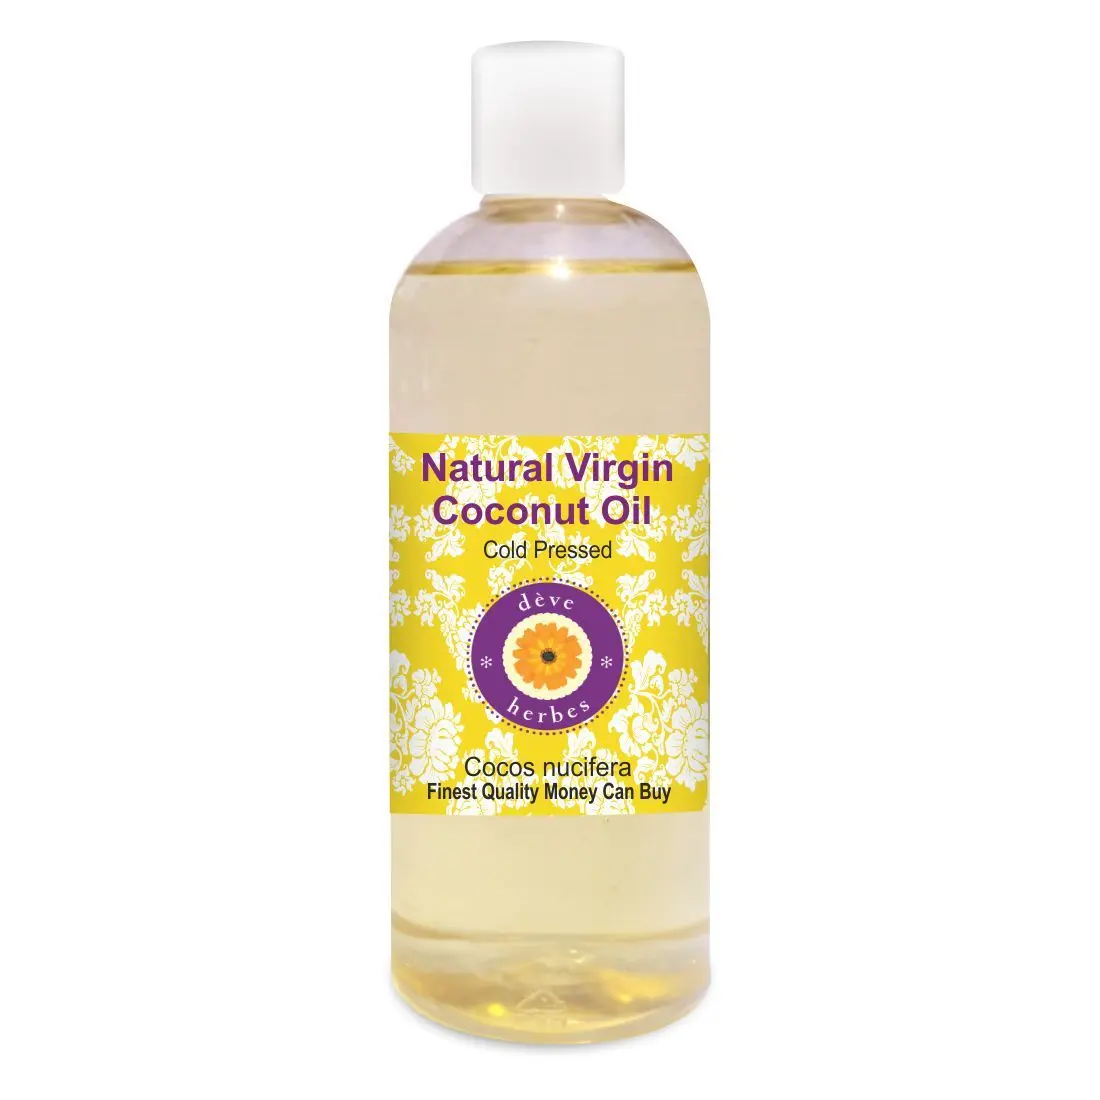 Deve Herbes Natural Virgin Coconut Oil (Cocos nucifera) 100% Pure Natural Therapeutic Grade Cold Pressed (200 ml)